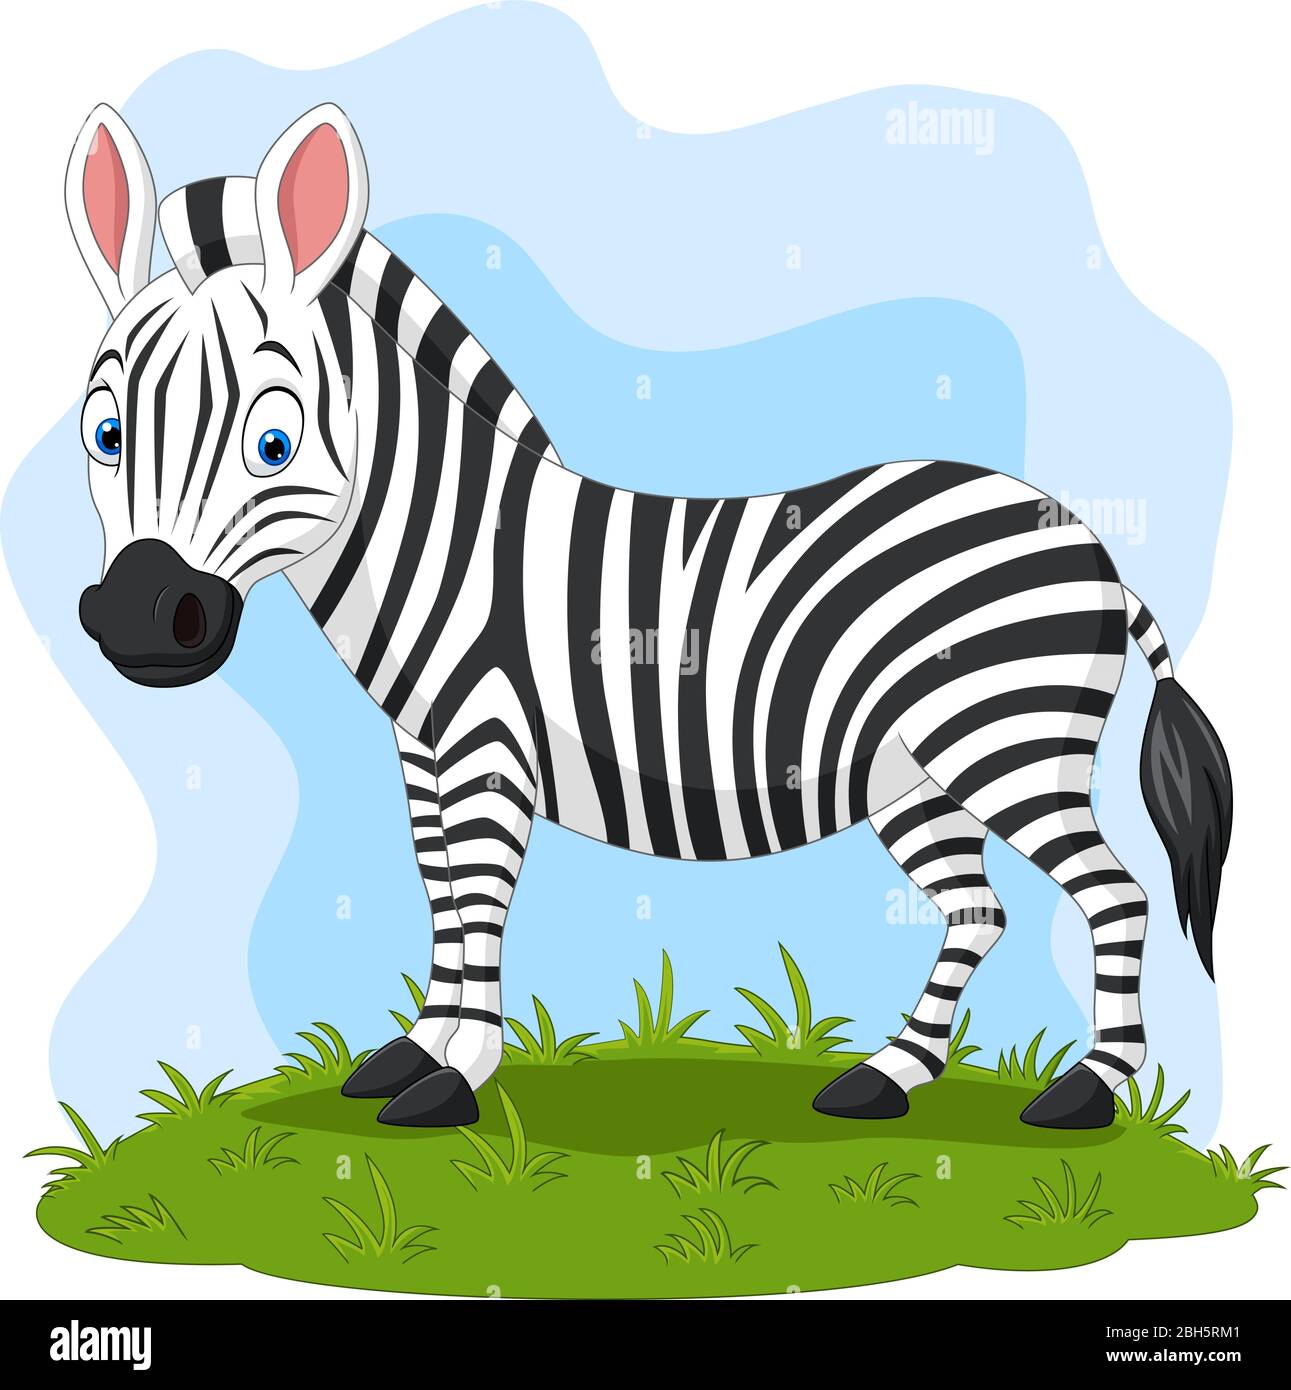 Cartoon happy zebra in the grass Stock Vector